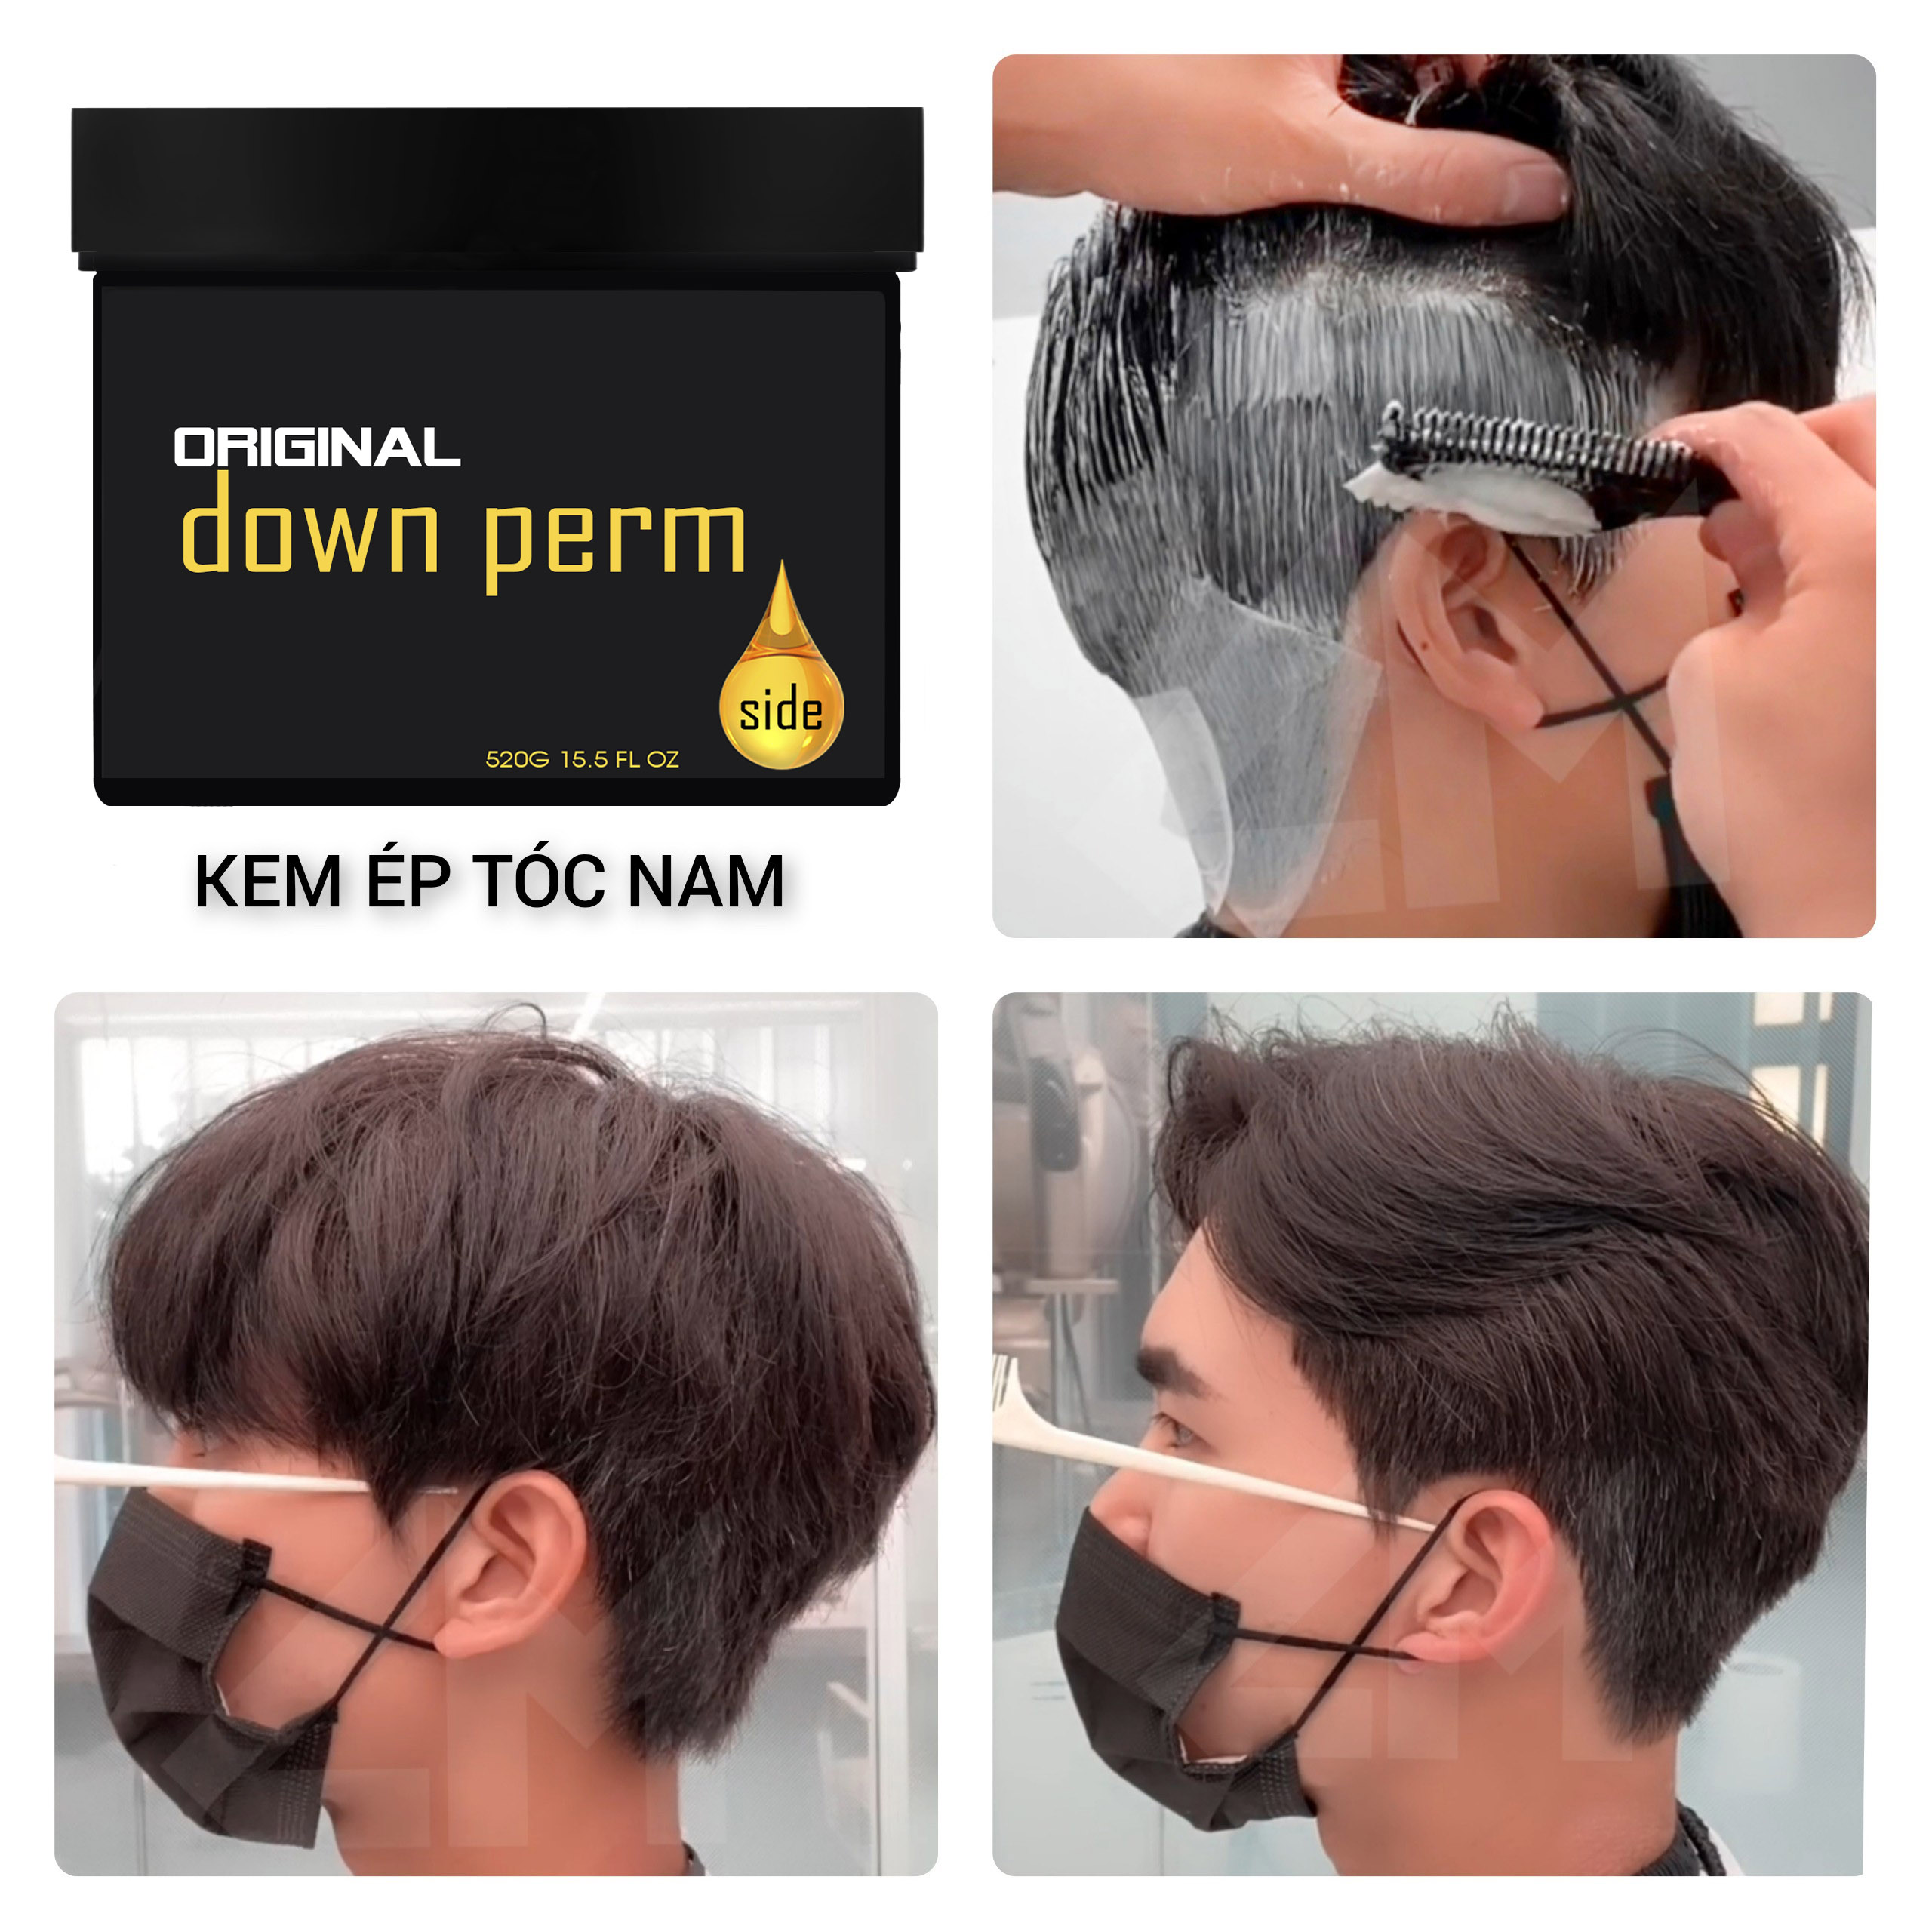 Kem Ép Side uốn mái tốt, không hăng mùi, bán chạy hàng đầu cho phụ liệu tóc,  salon – WAHLstore.vn